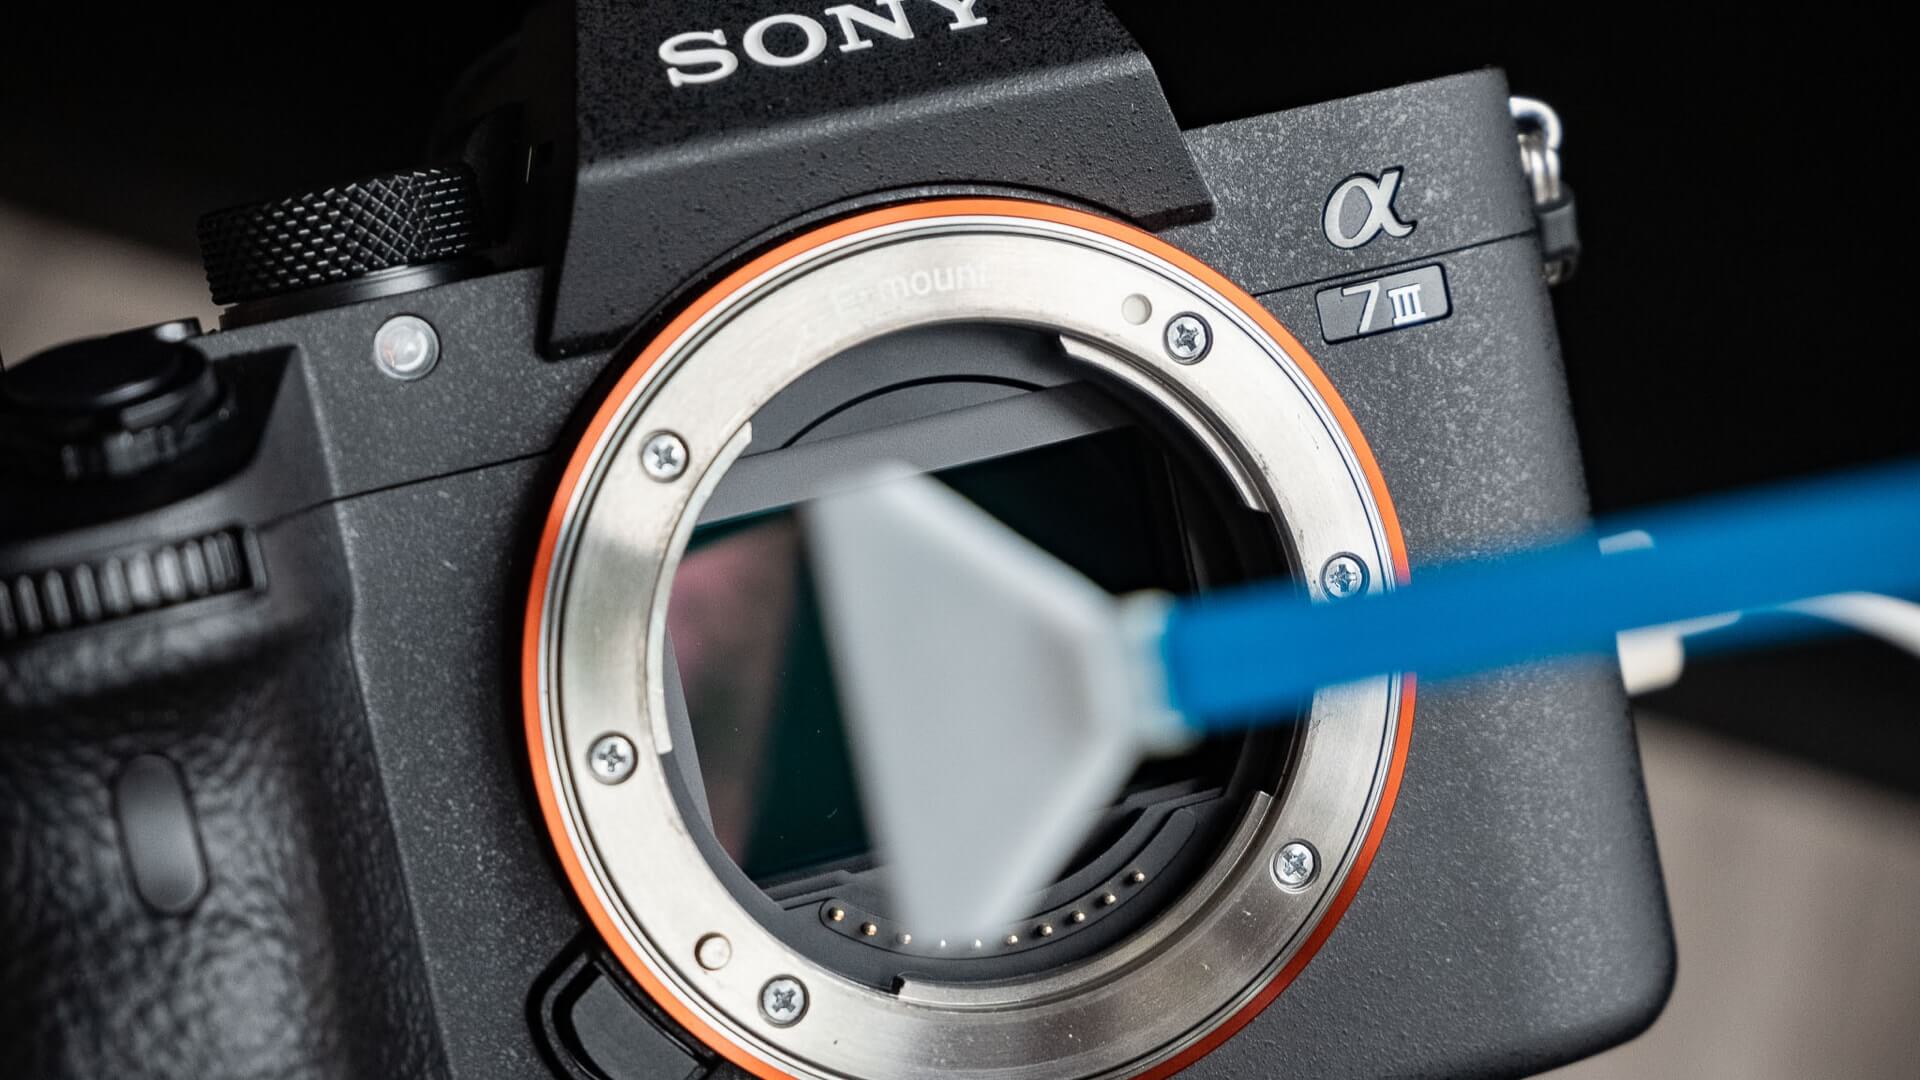 Vấn đề vệ sinh máy ảnh không đúng cách gây ra một số lỗi máy ảnh thường gặp